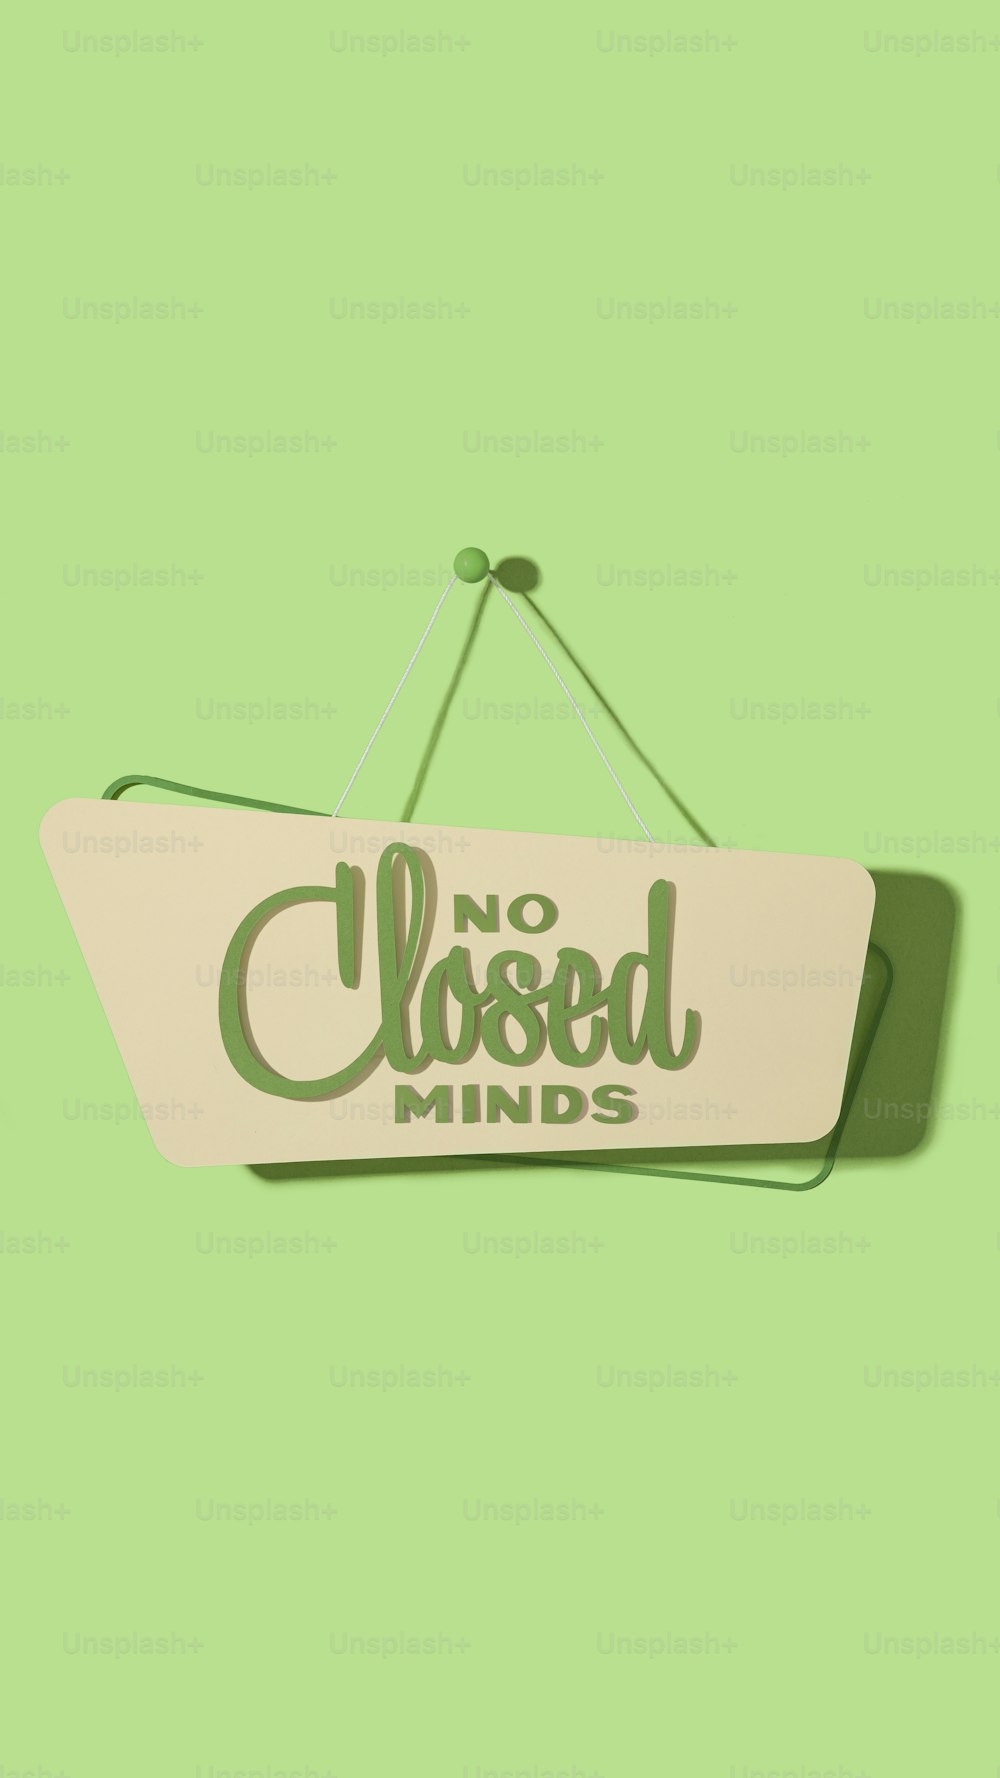 Un letrero que dice que no hay mentes cerradas colgadas en una pared